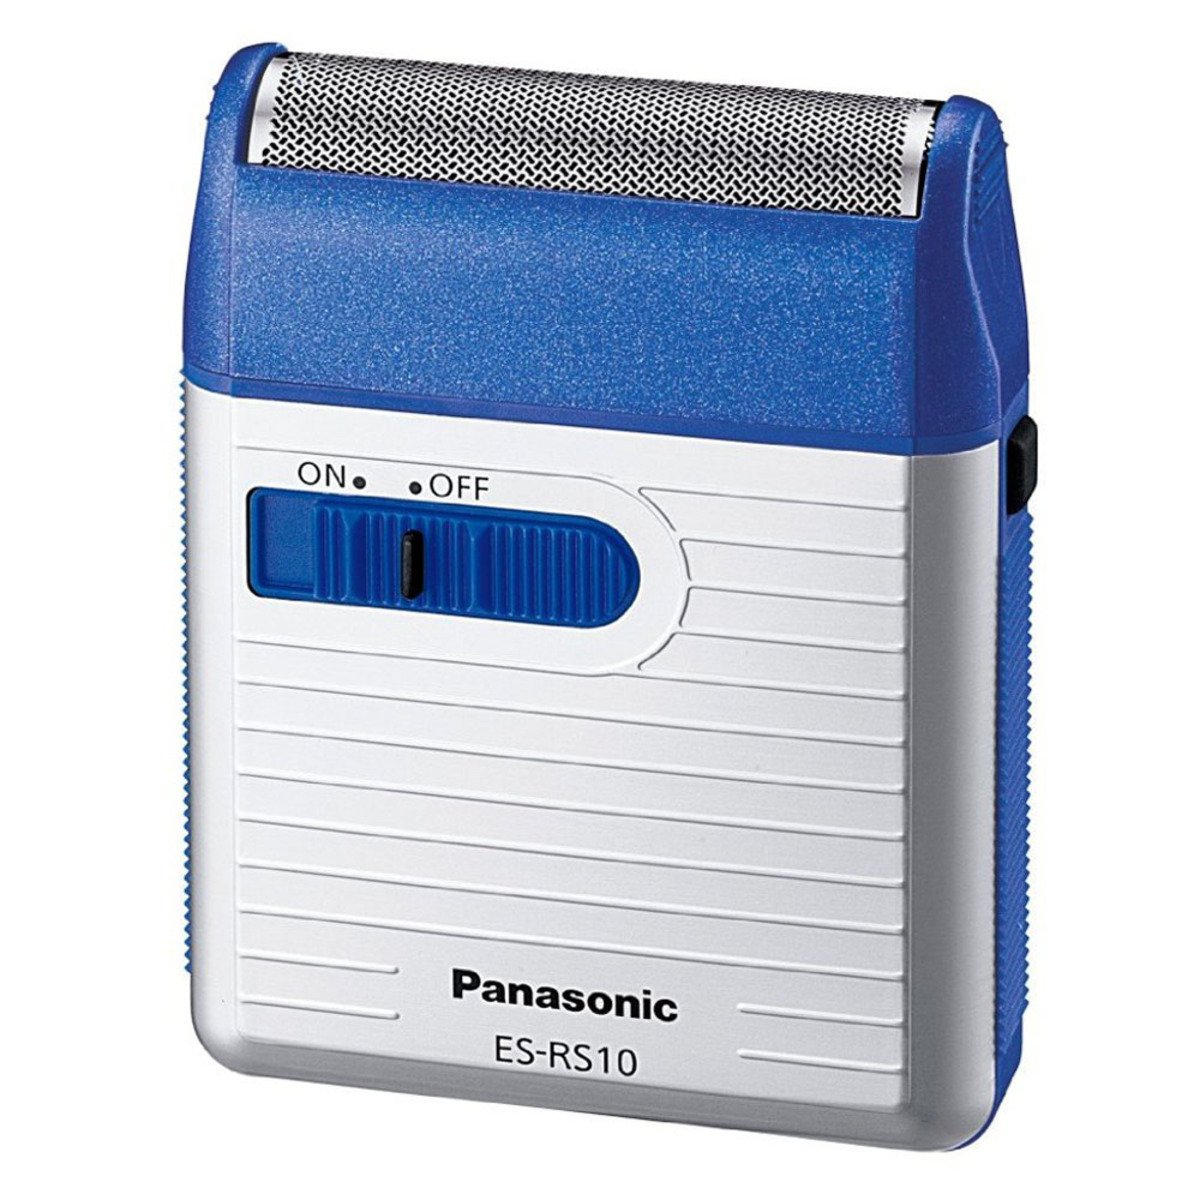 Panasonic Shaver ES-RS10